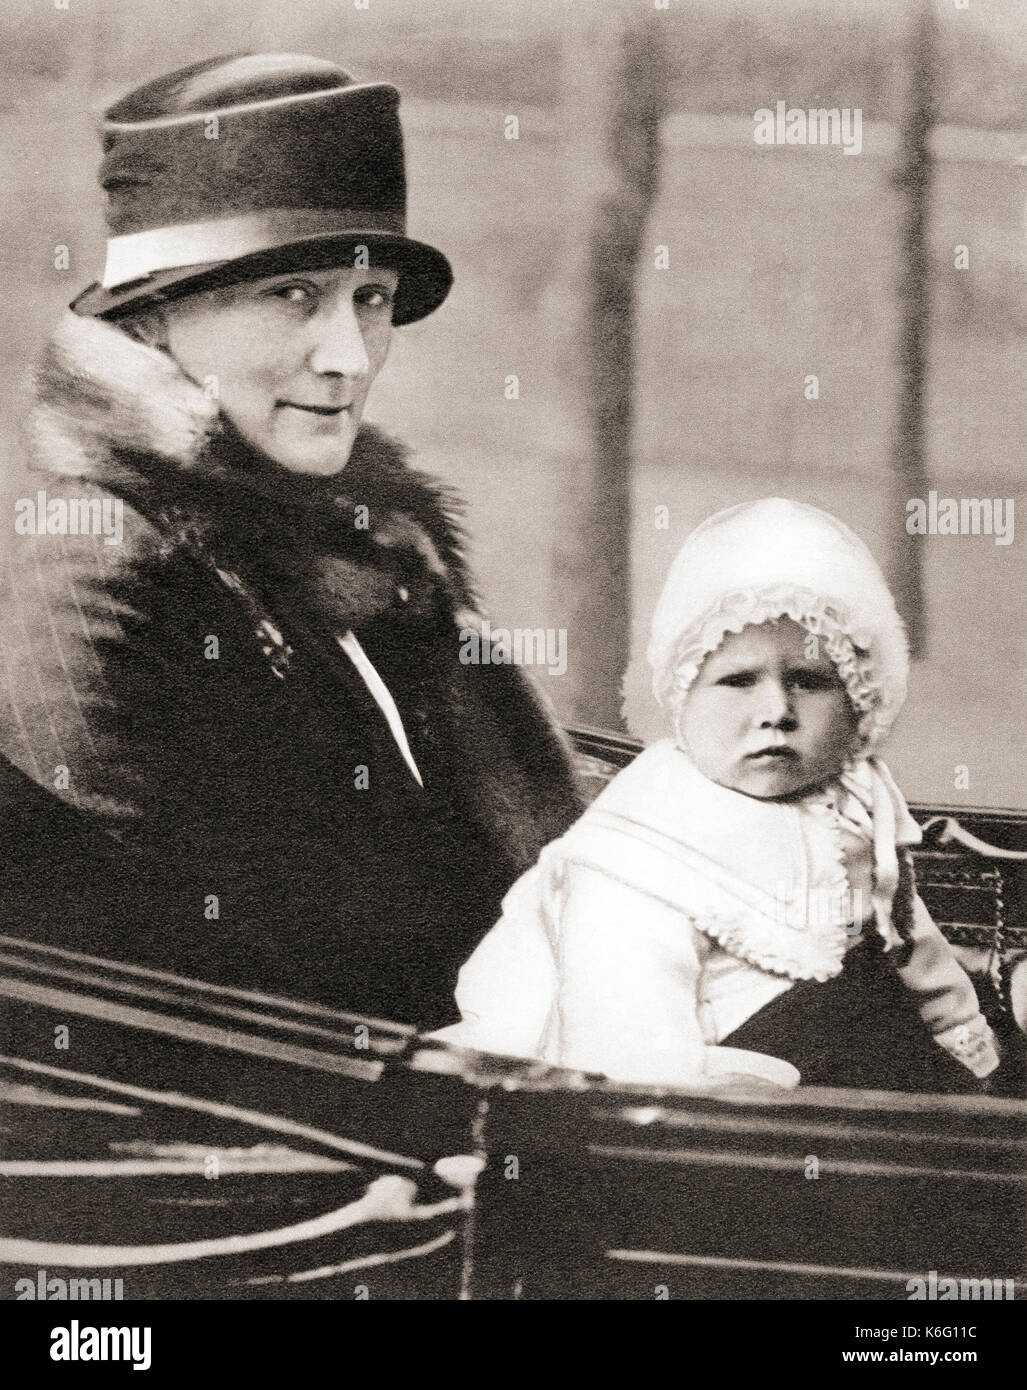 Prinzessin Elizabeth von York, zukünftige Königin Elizabeth II, 1926 - 2022, hier im Alter von 2 Jahren mit ihrem Kindermädchen Clara Knight, bekannt als 'Allah', gesehen 1928. Aus dem Krönungsbuch von König Georg VI. Und Königin Elisabeth, veröffentlicht 1937. Stockfoto